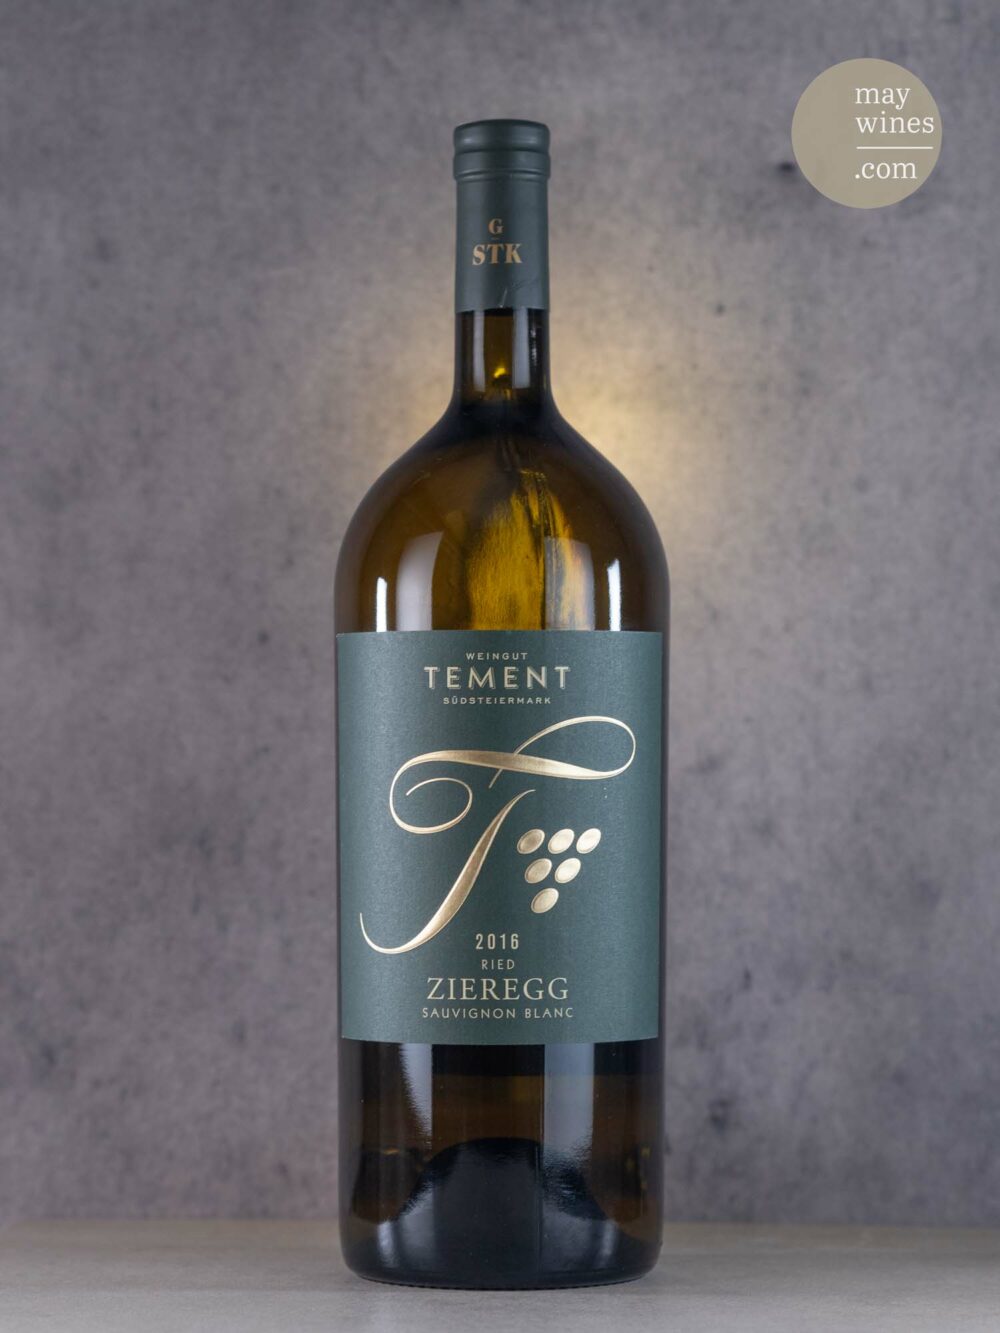 May Wines – Weißwein – 2016 Zieregg Sauvignon Blanc - Weingut Tement